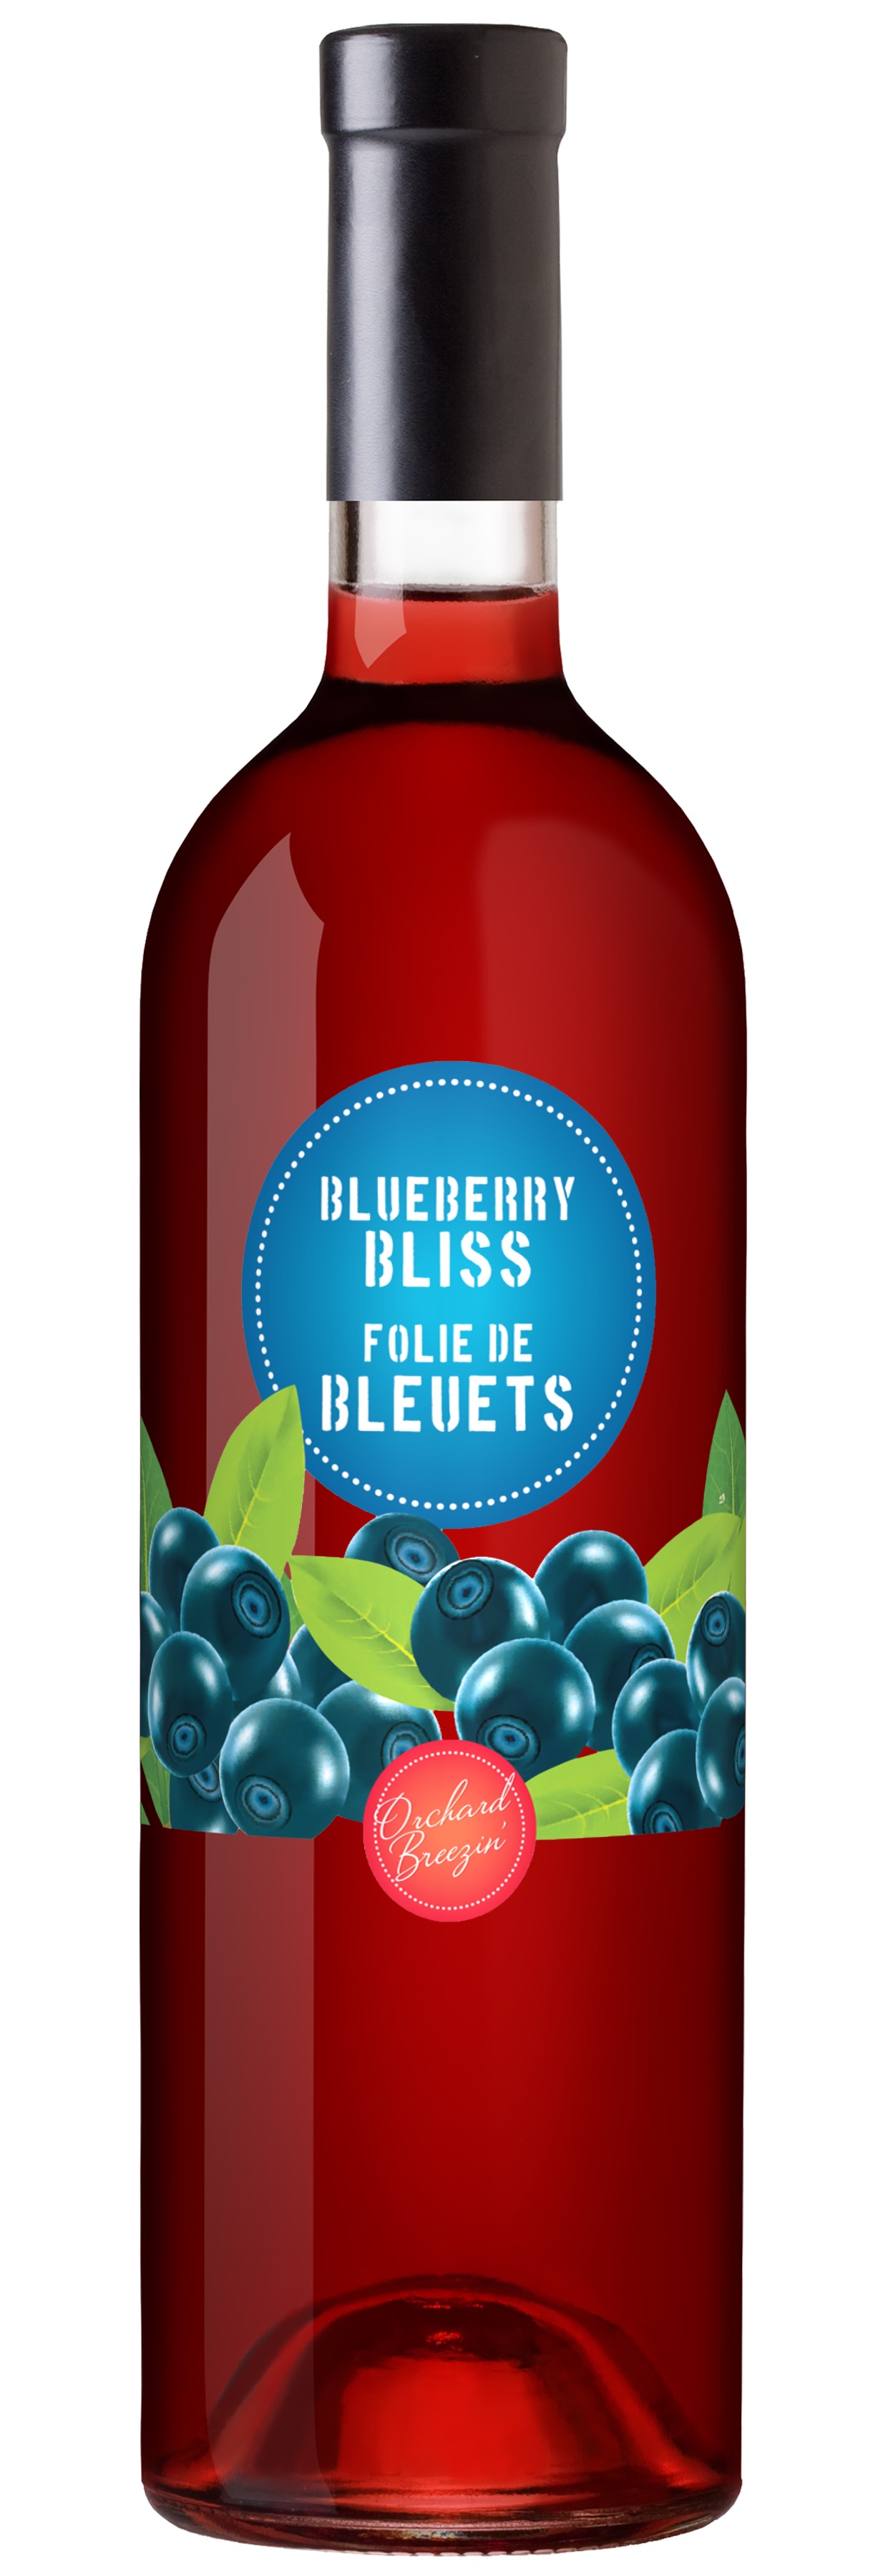 https://0901.nccdn.net/4_2/000/000/07d/95b/OB_Bottle_BlueberryBliss.jpg